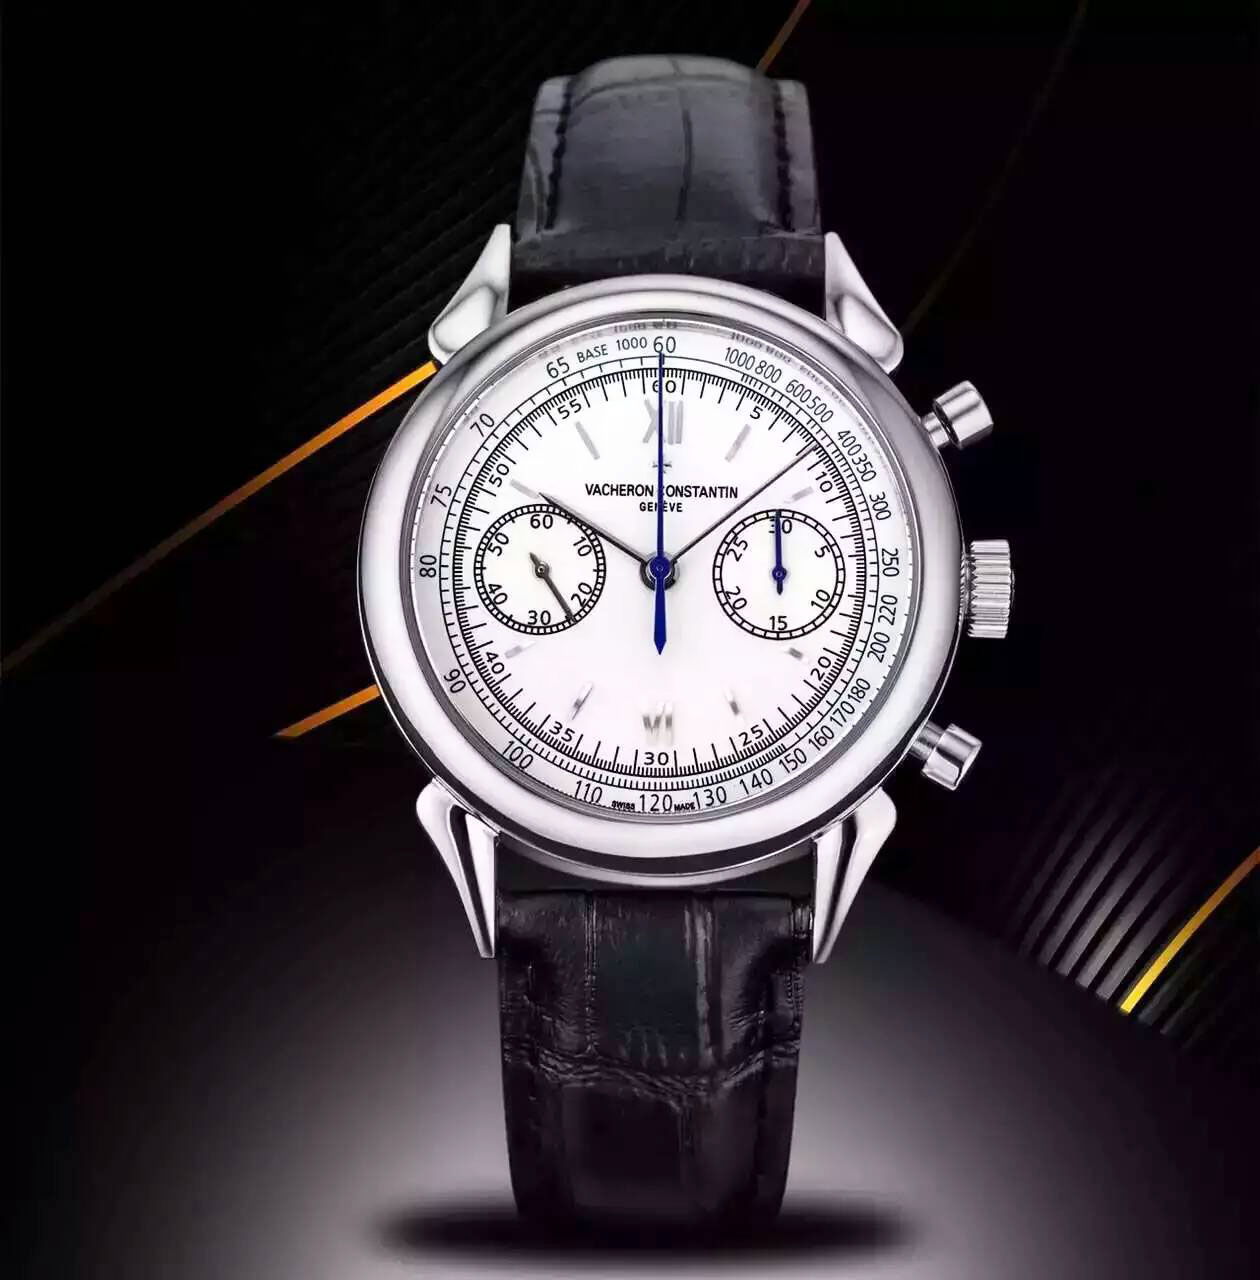 江詩丹頓 Vacheron Constantin 全新“牛角形”錶耳復古錶款 搭載7750自動上鏈機芯